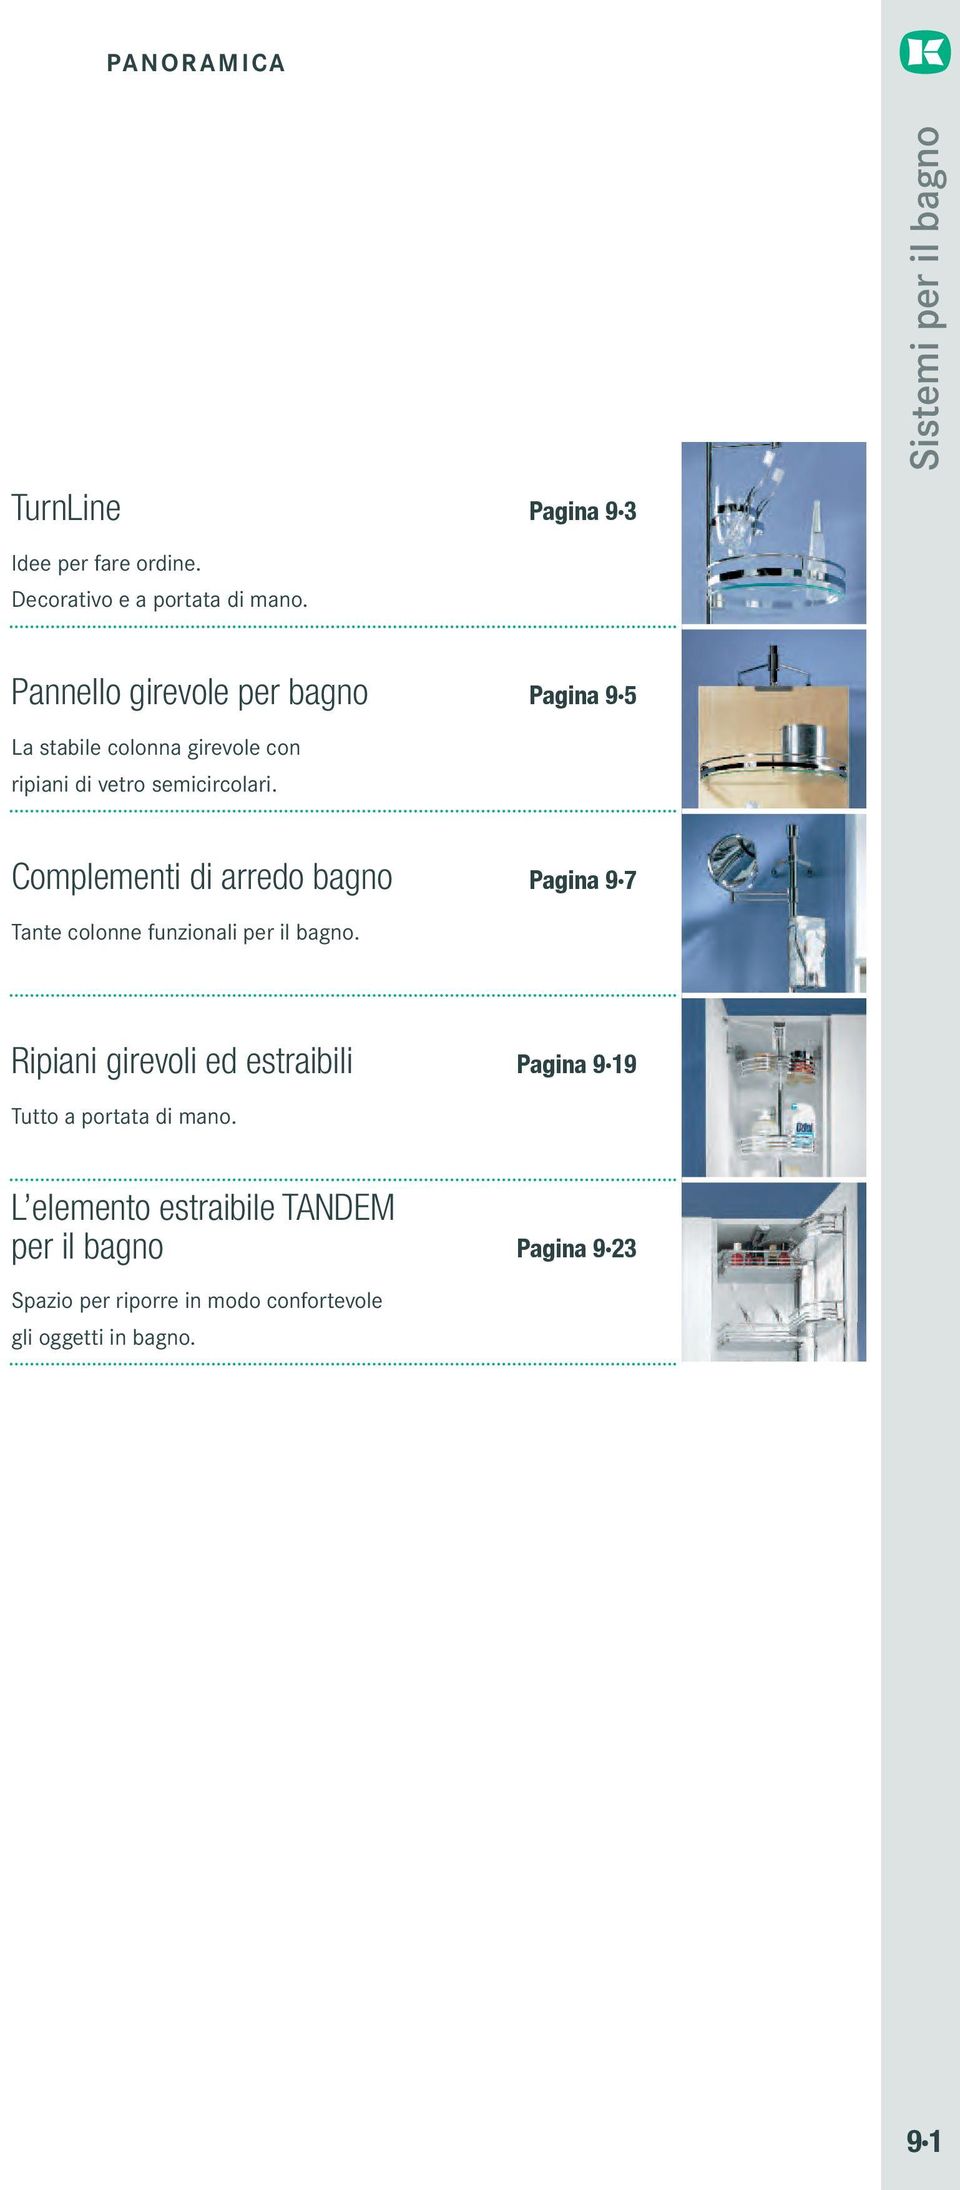 Complementi di arredo bagno Pagina 9 7 Tante colonne funzionali per il bagno.